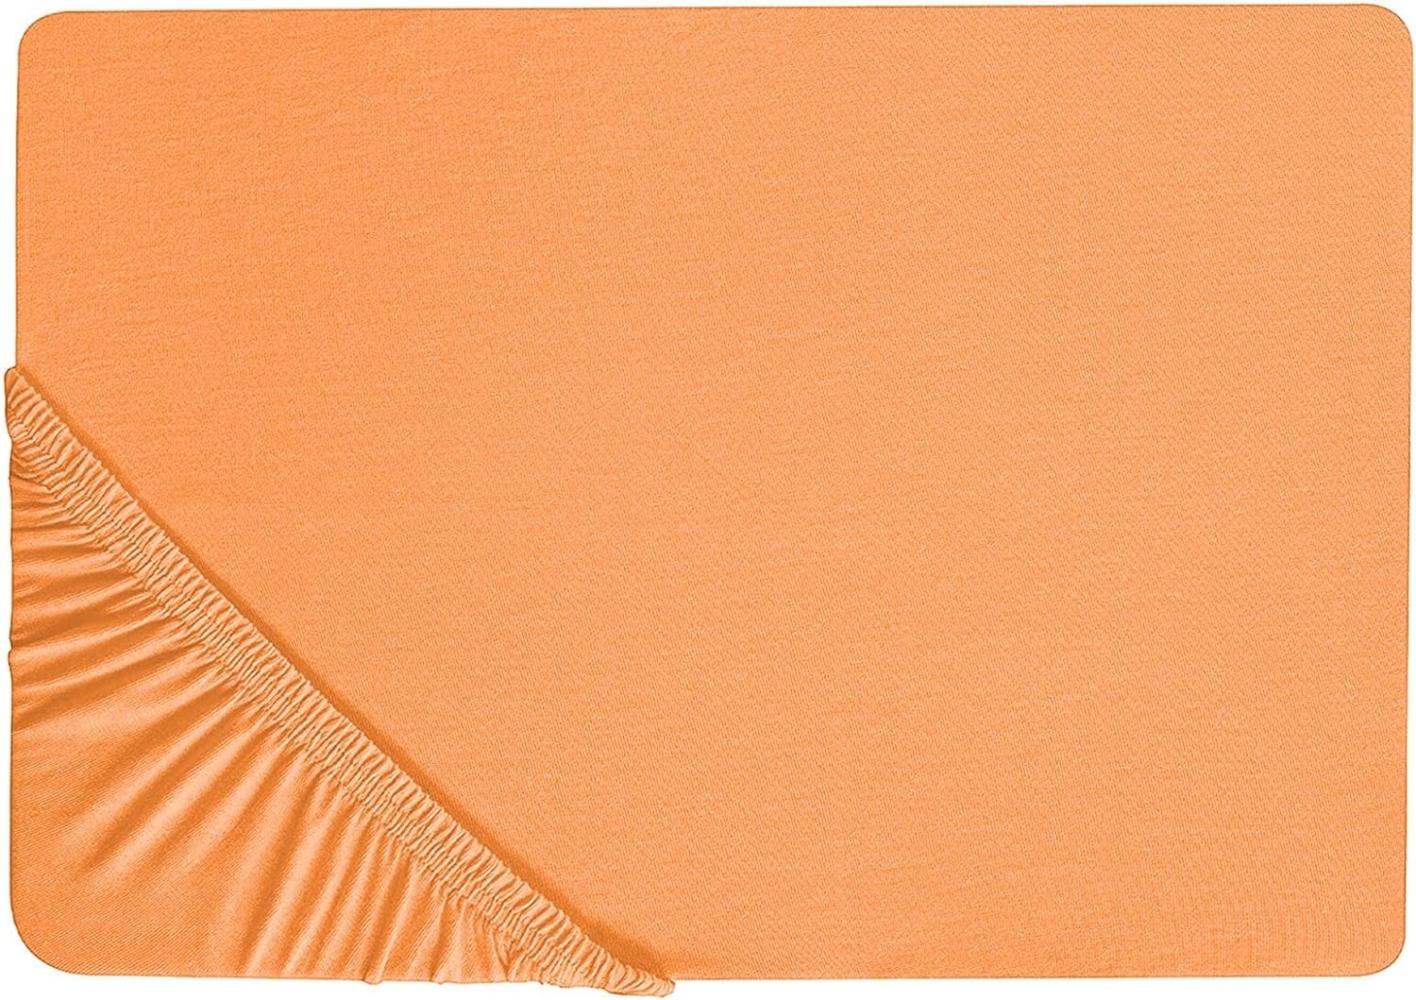 Spannbettlaken Baumwolle orange 140 x 200 cm JANBU Bild 1